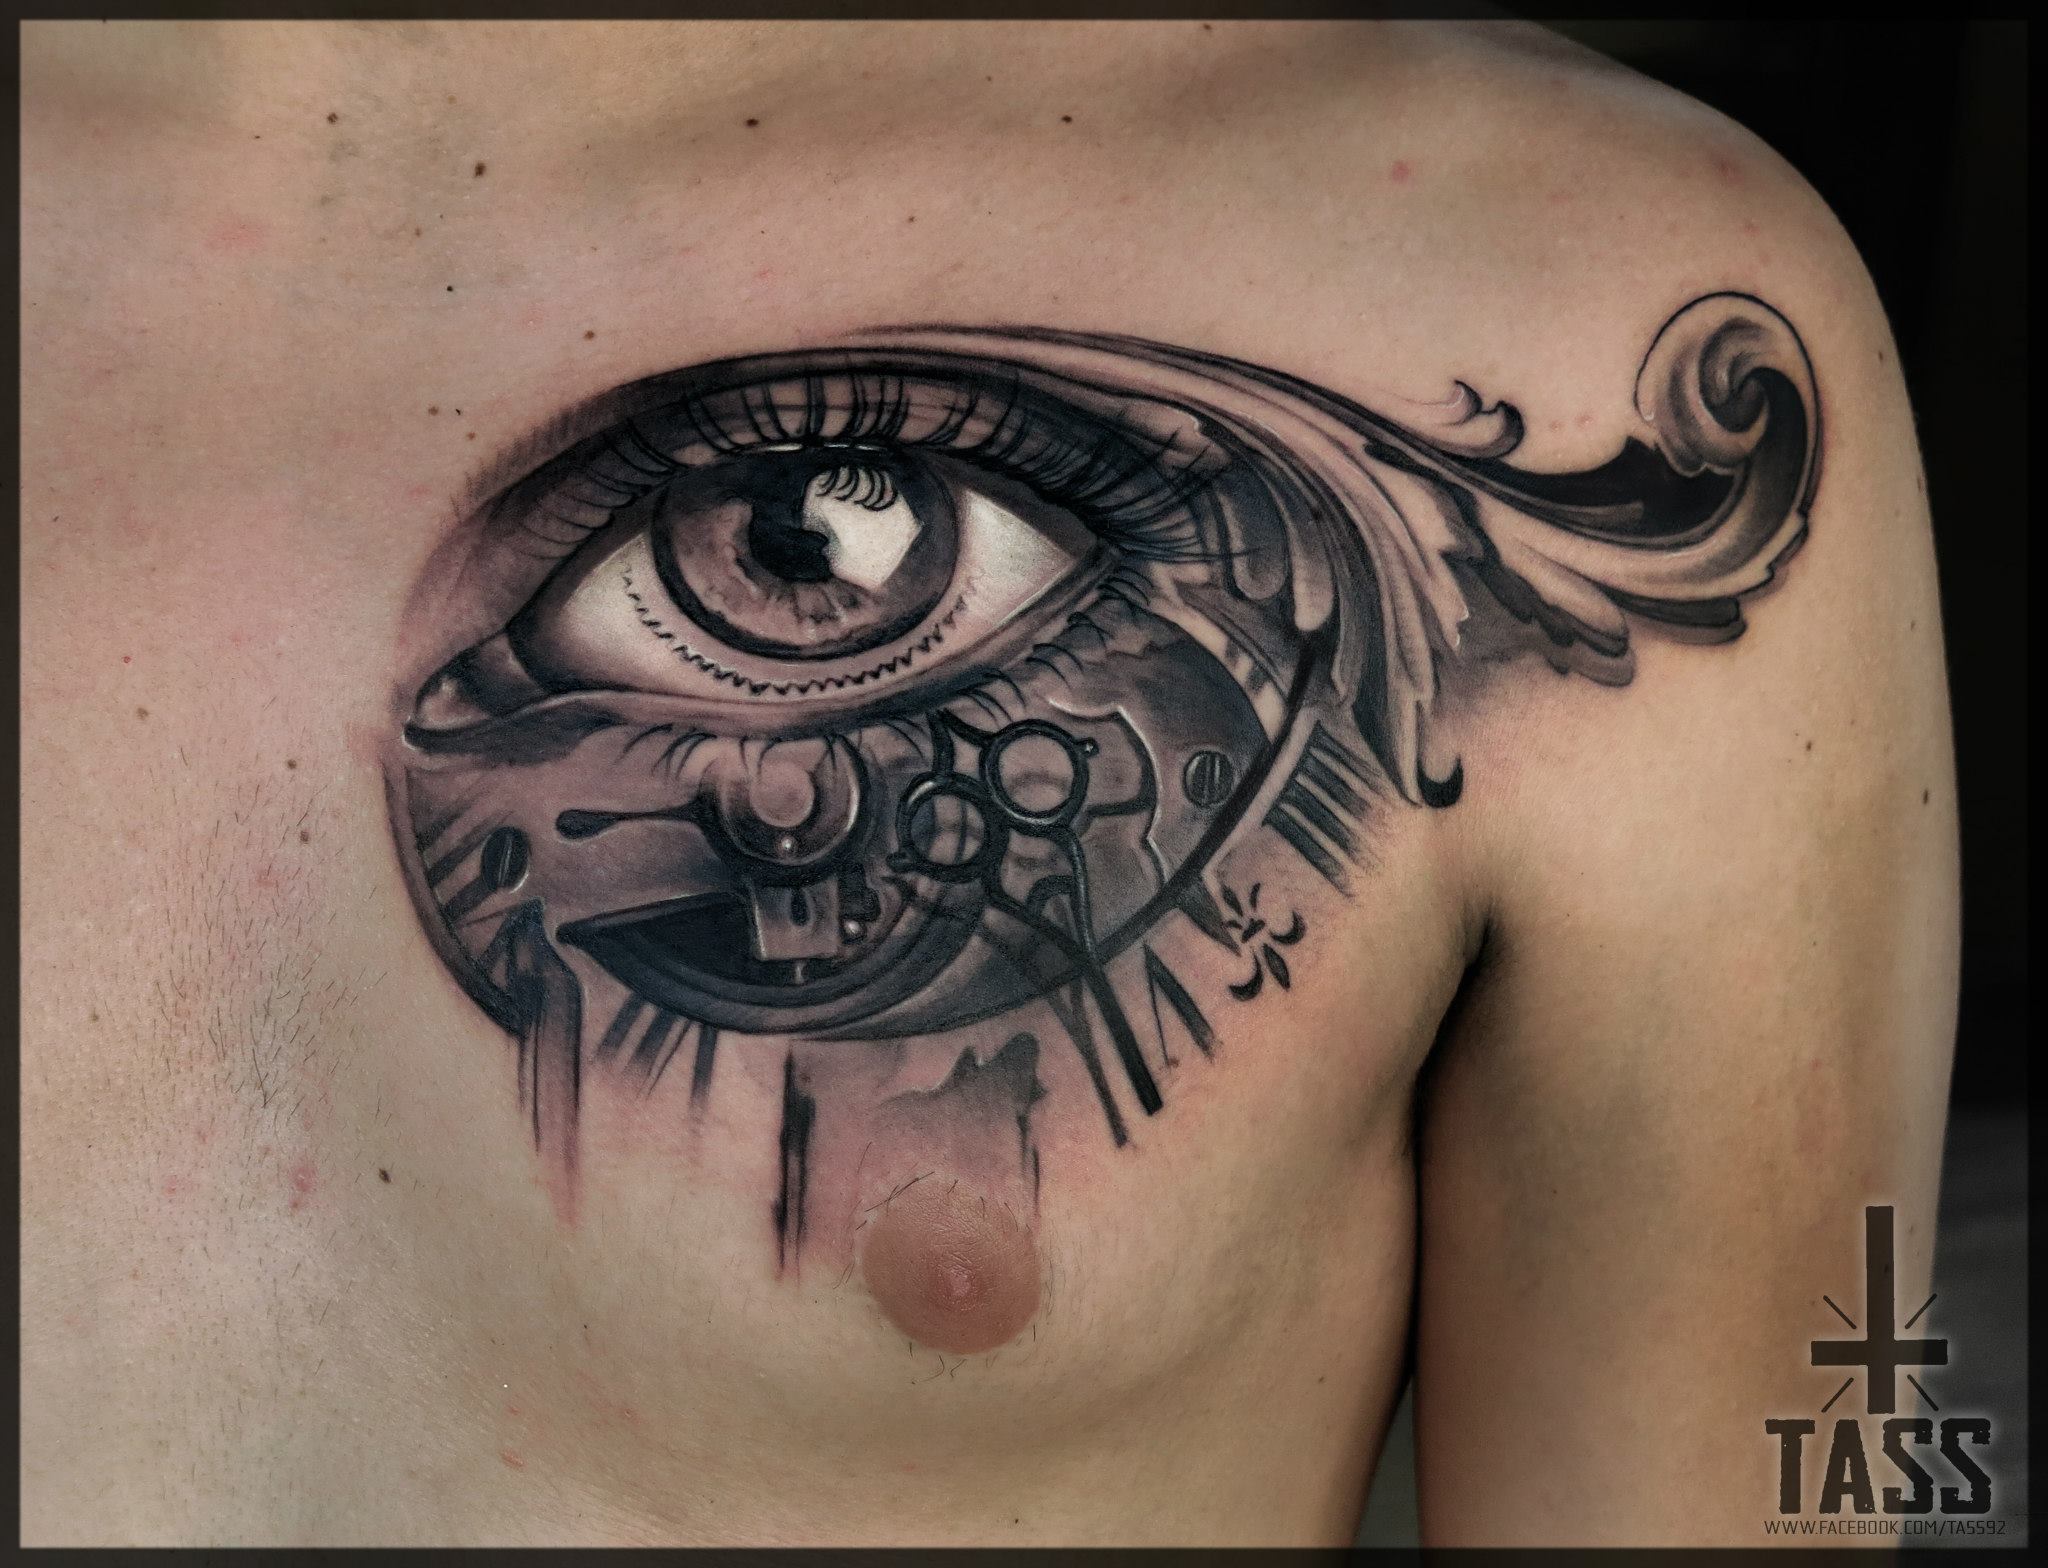 Full back tattoo || shiva tattoo pashupati tattoo || at ujs tattoo ink -  YouTube